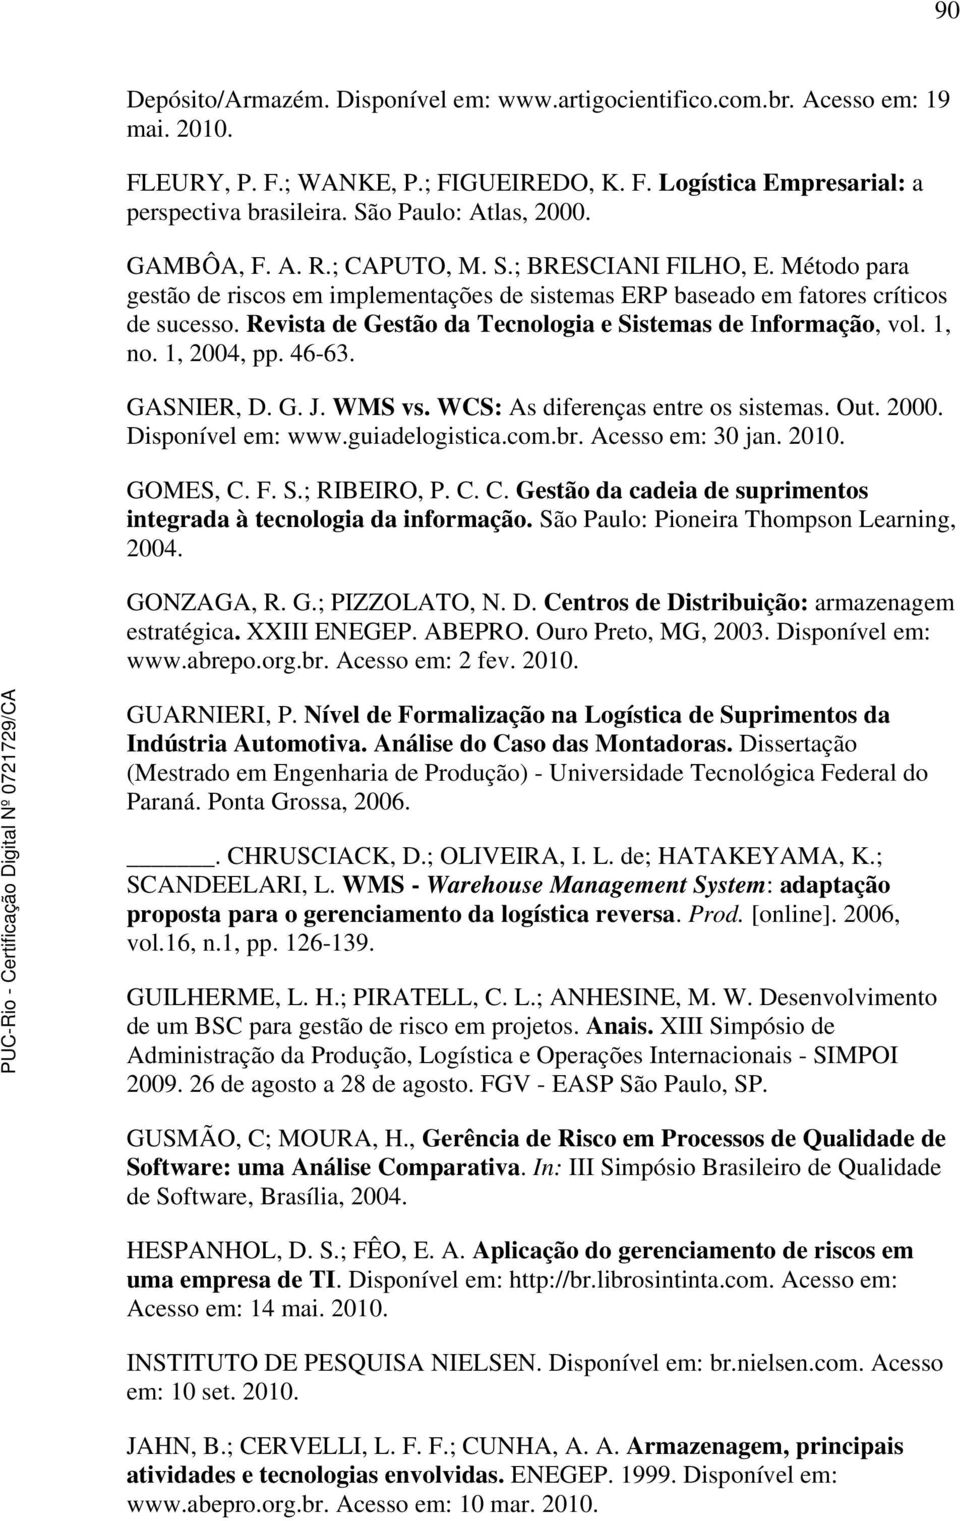 Revista de Gestão da Tecnologia e Sistemas de Informação, vol. 1, no. 1, 2004, pp. 46-63. GASNIER, D. G. J. WMS vs. WCS: As diferenças entre os sistemas. Out. 2000. Disponível em: www.guiadelogistica.